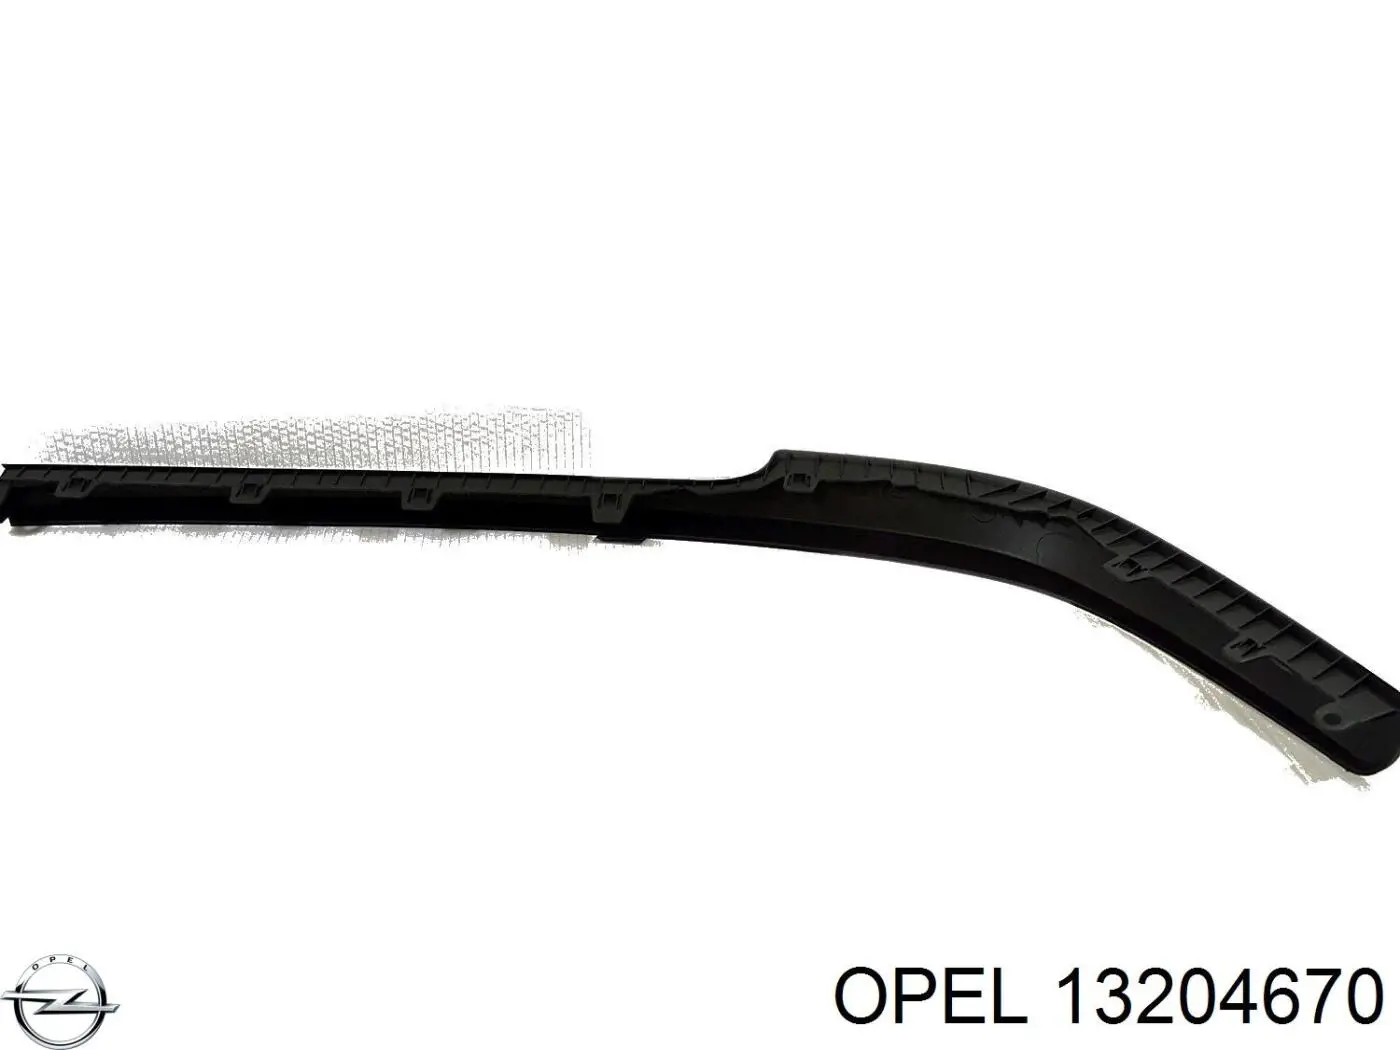 13204670 Opel alerón parachoques delantero derecho